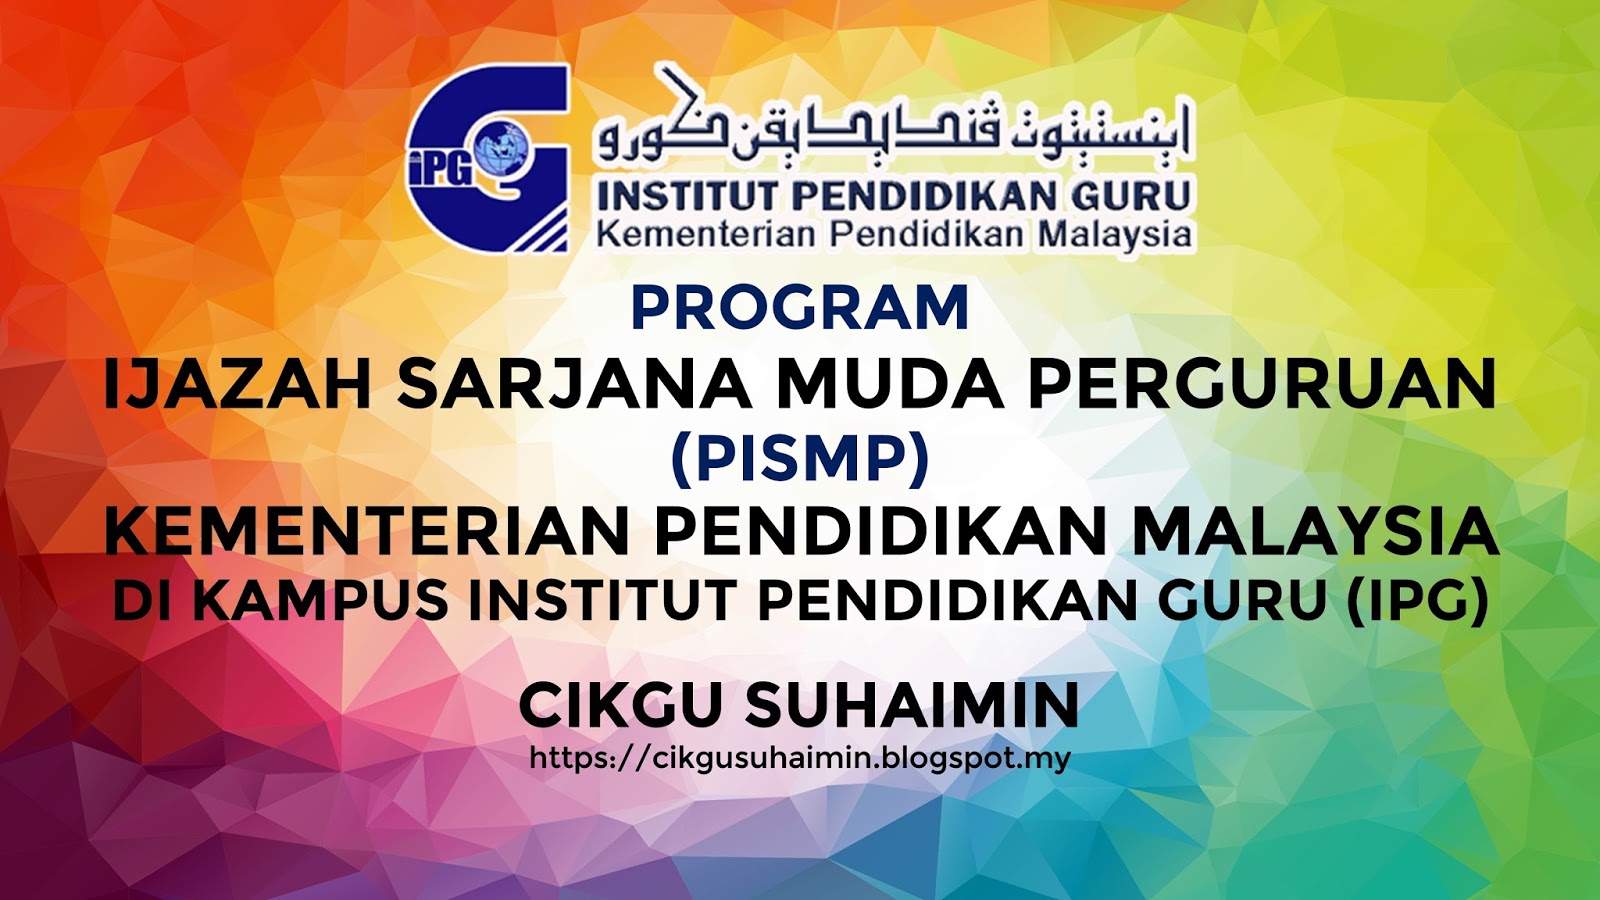 Program Ijazah Sarjana Muda Perguruan Pismp Kementerian Pendidikan Malaysia Kpm Di Kampus Institut Pendidikan Guru Ipg